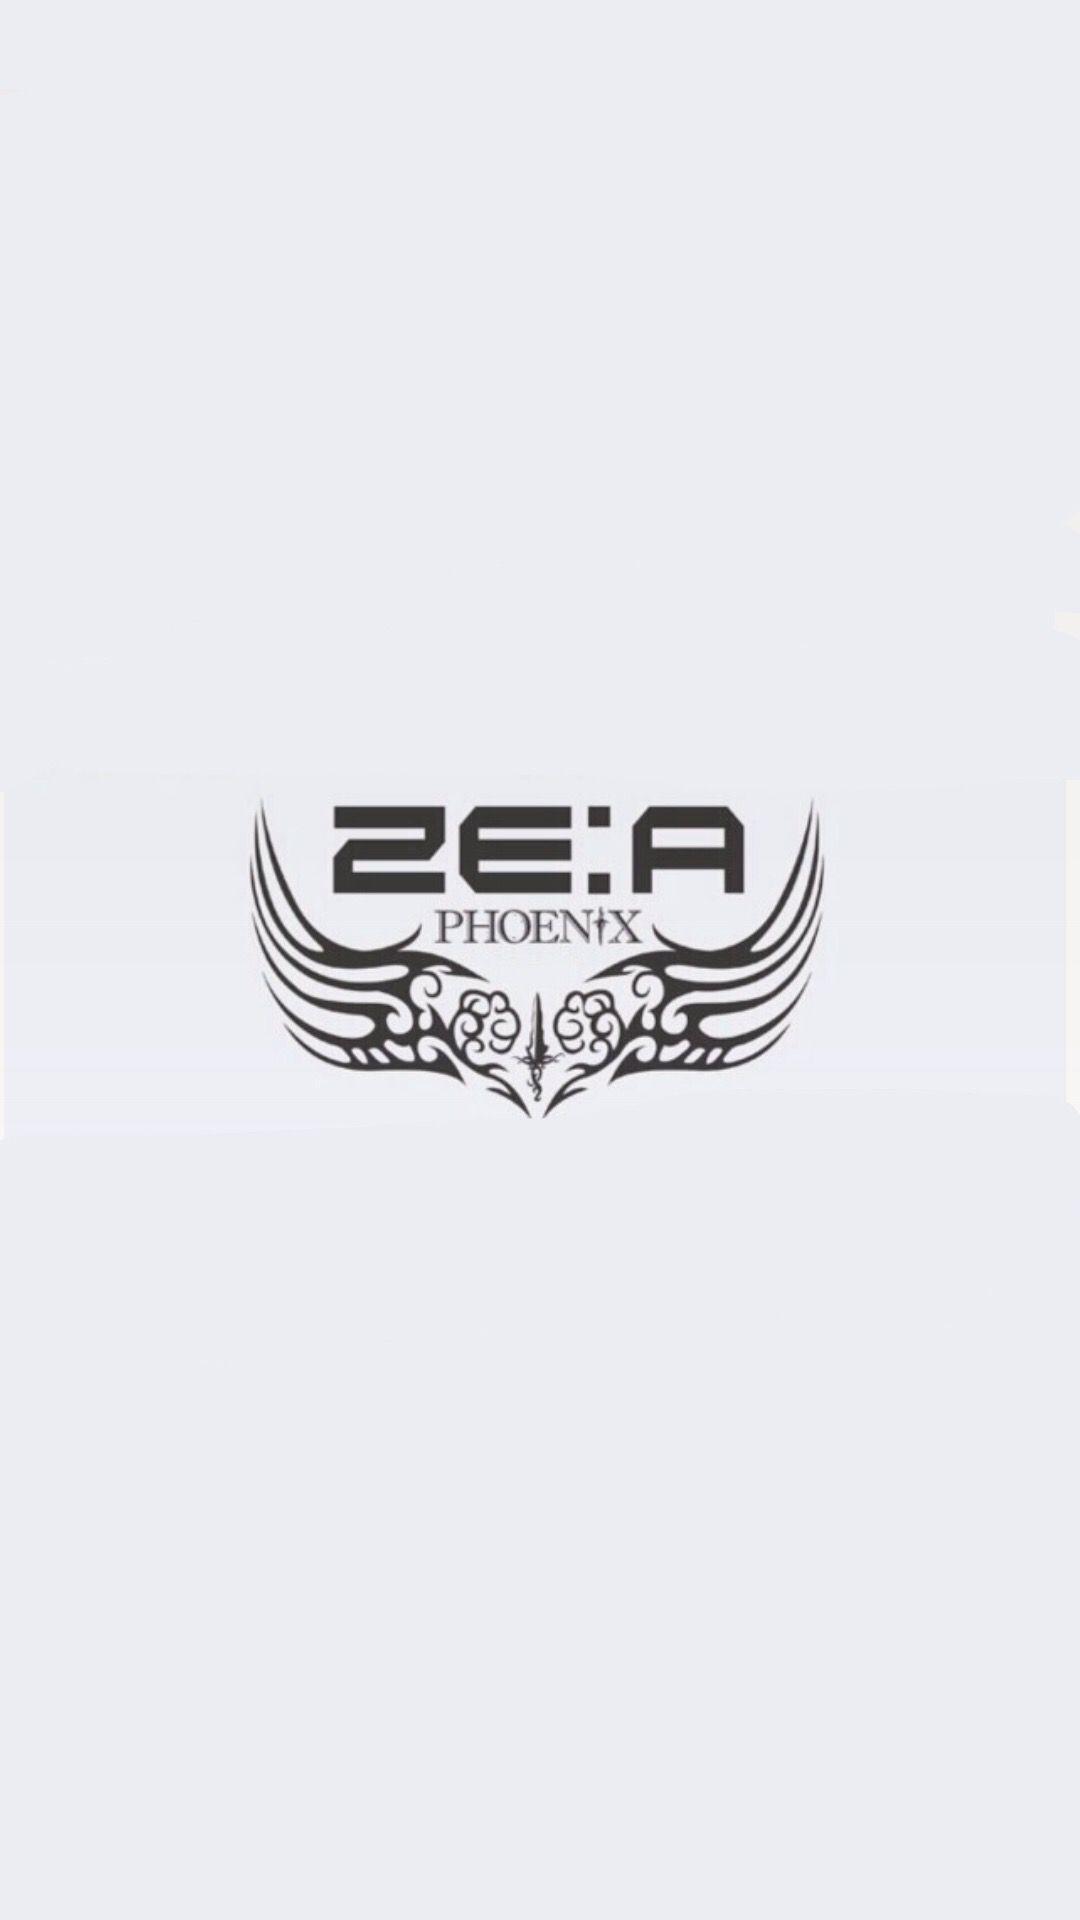 Zea Logo - Best Zea logo wallpaper image. Un logo, Fondos, Legos